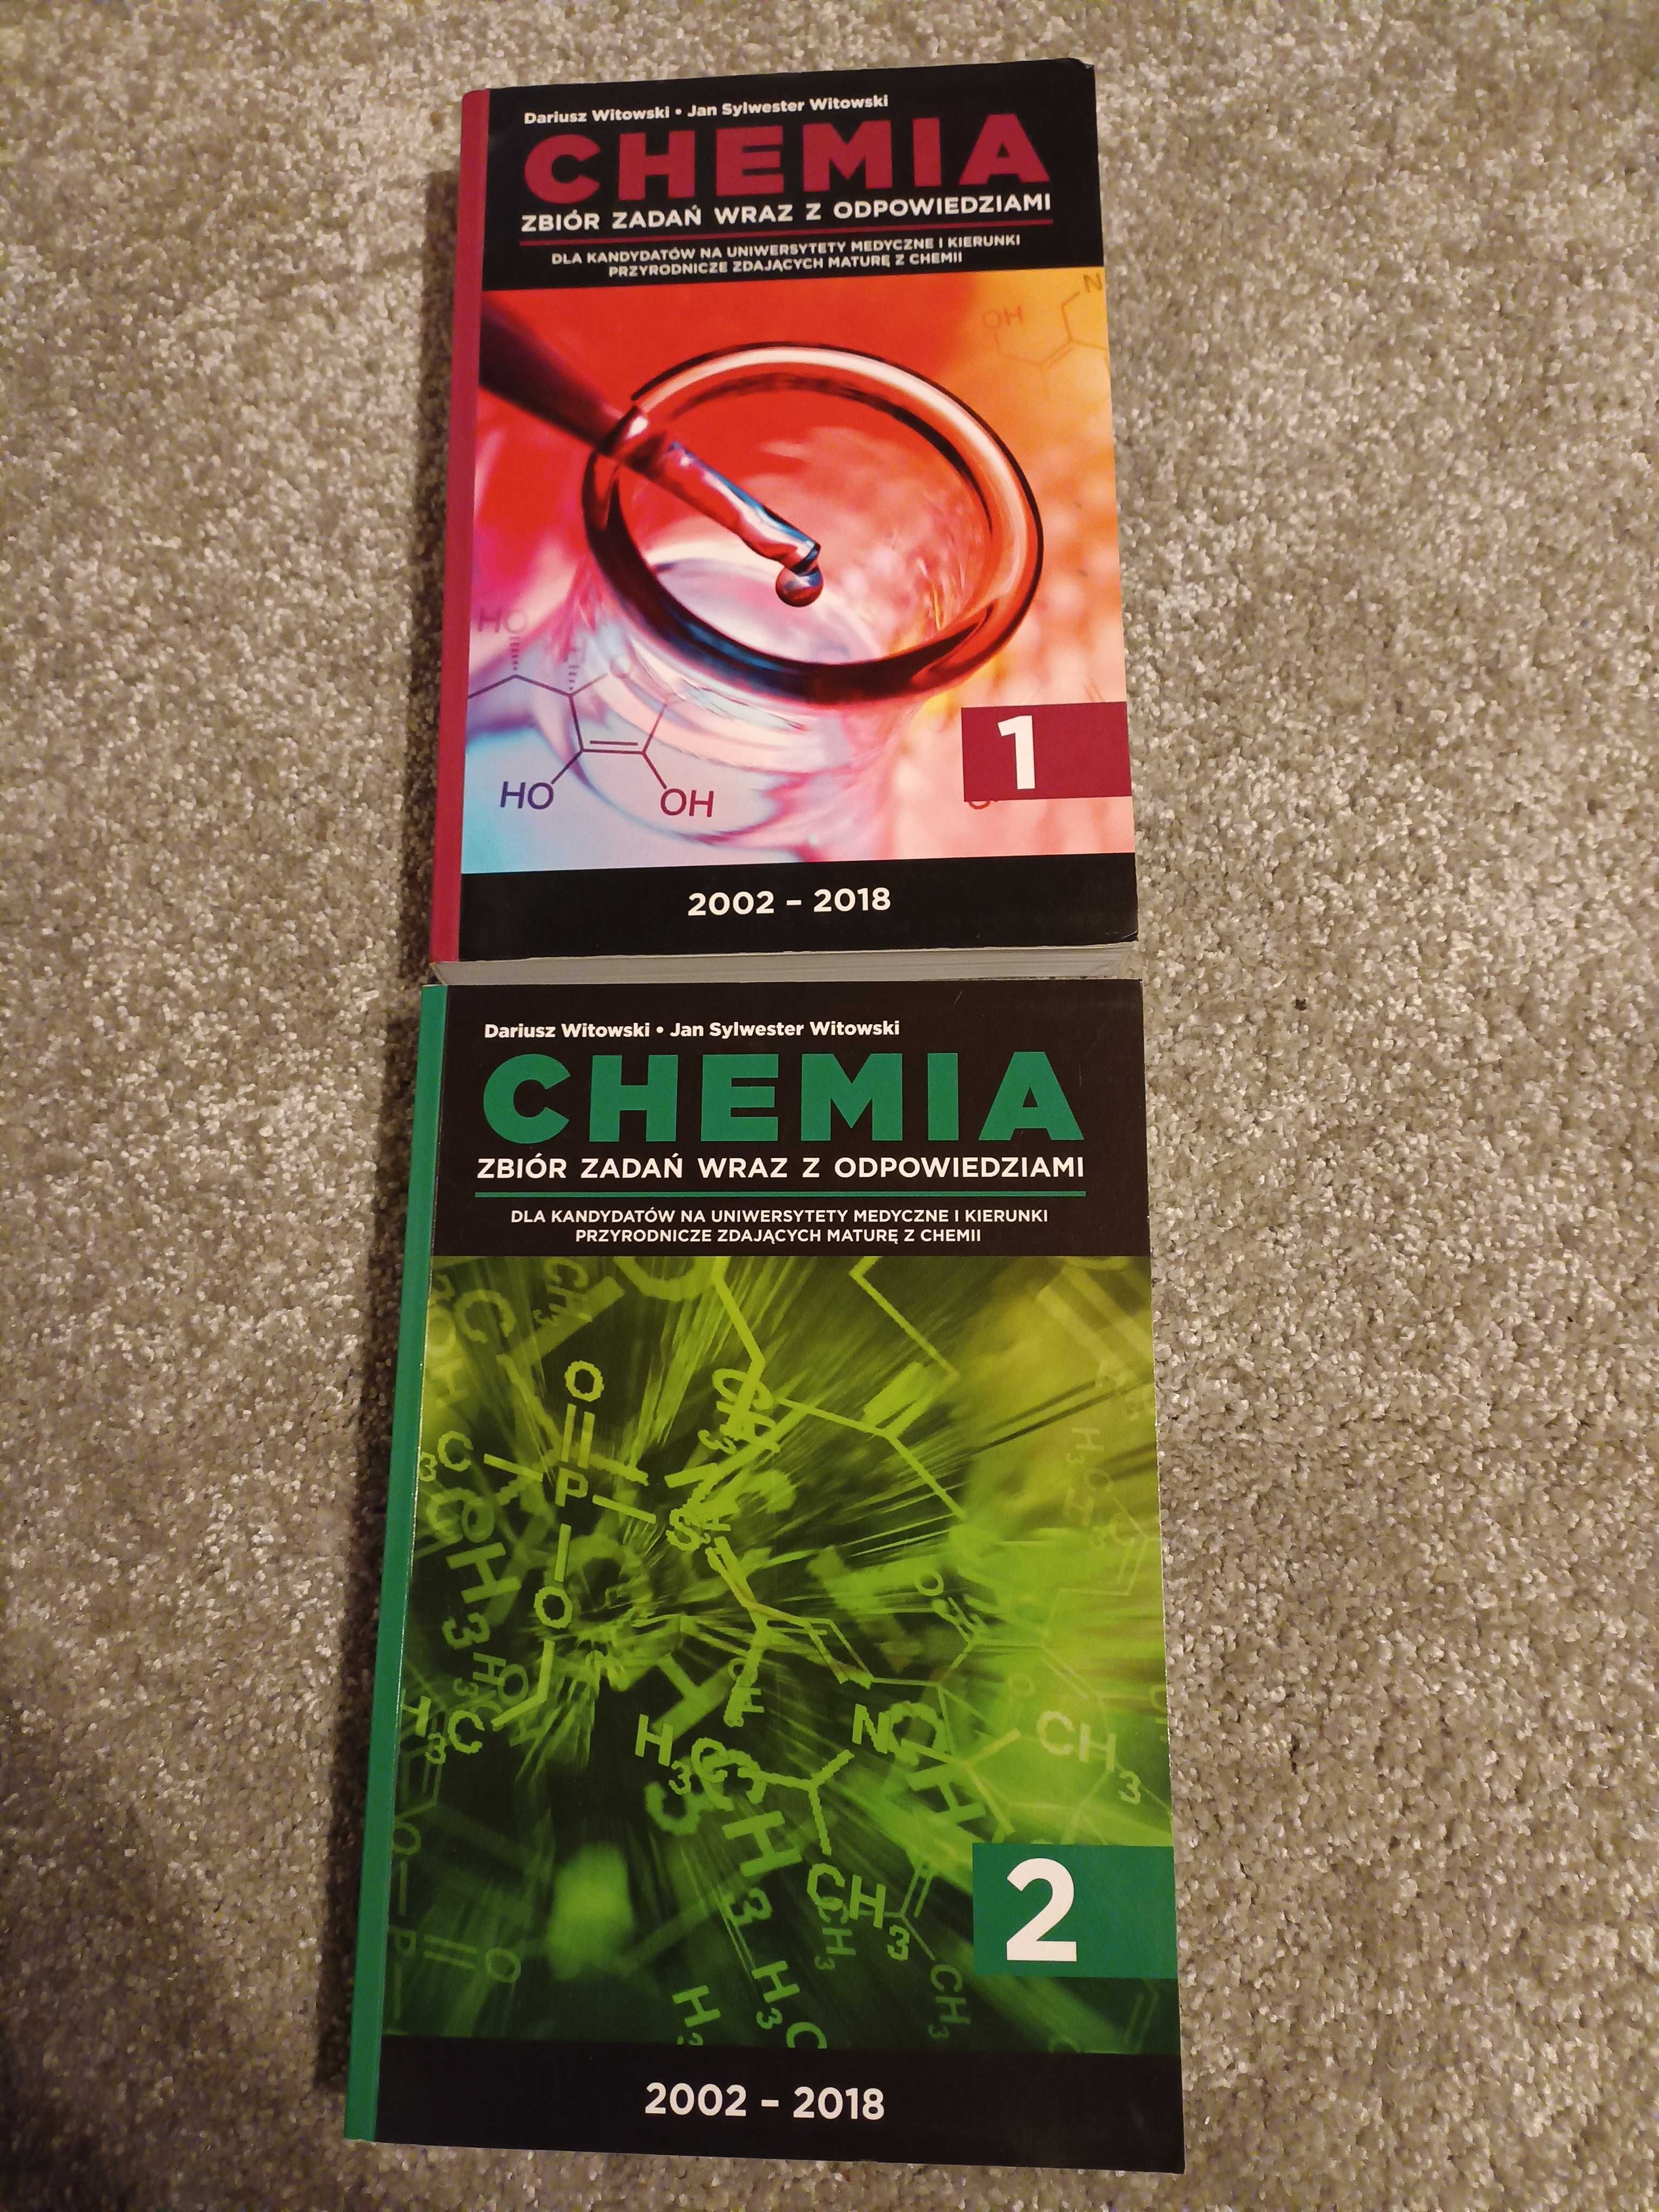 Chemia 1 i 2, Dariusz Witowski